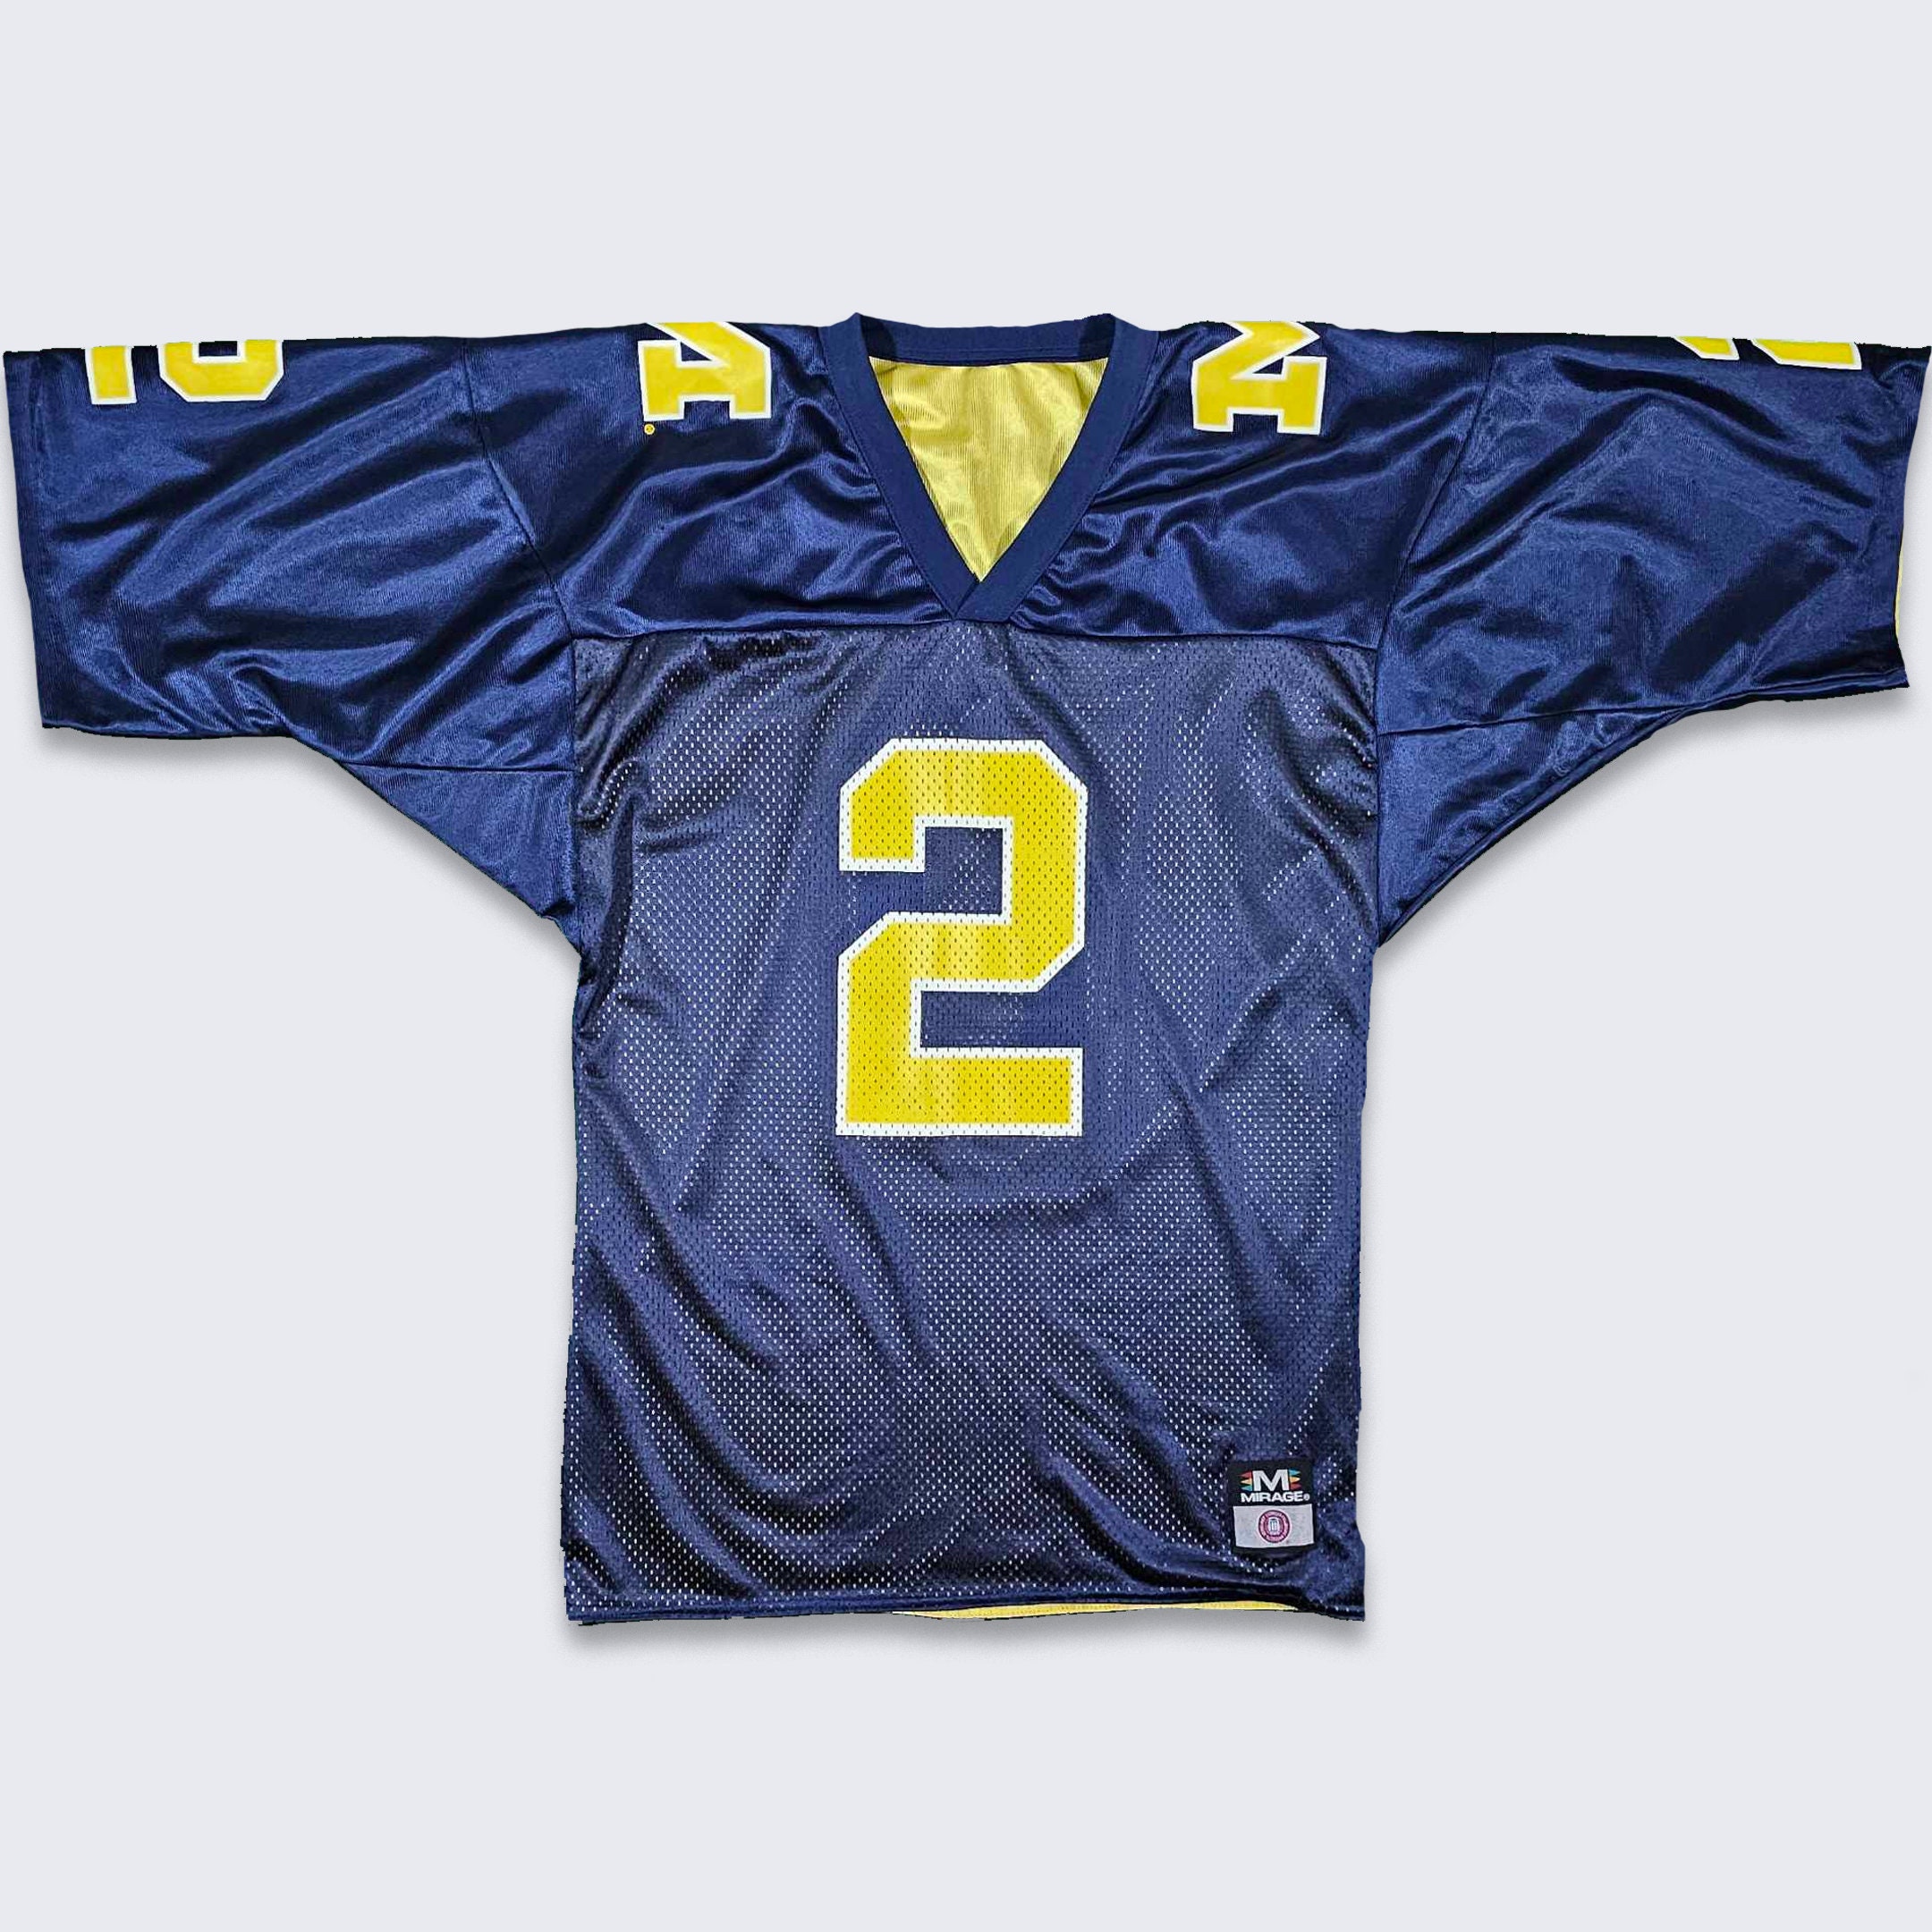 USC Trojans Nike Baseball Game Used Jersey #25 Stitched Size 48